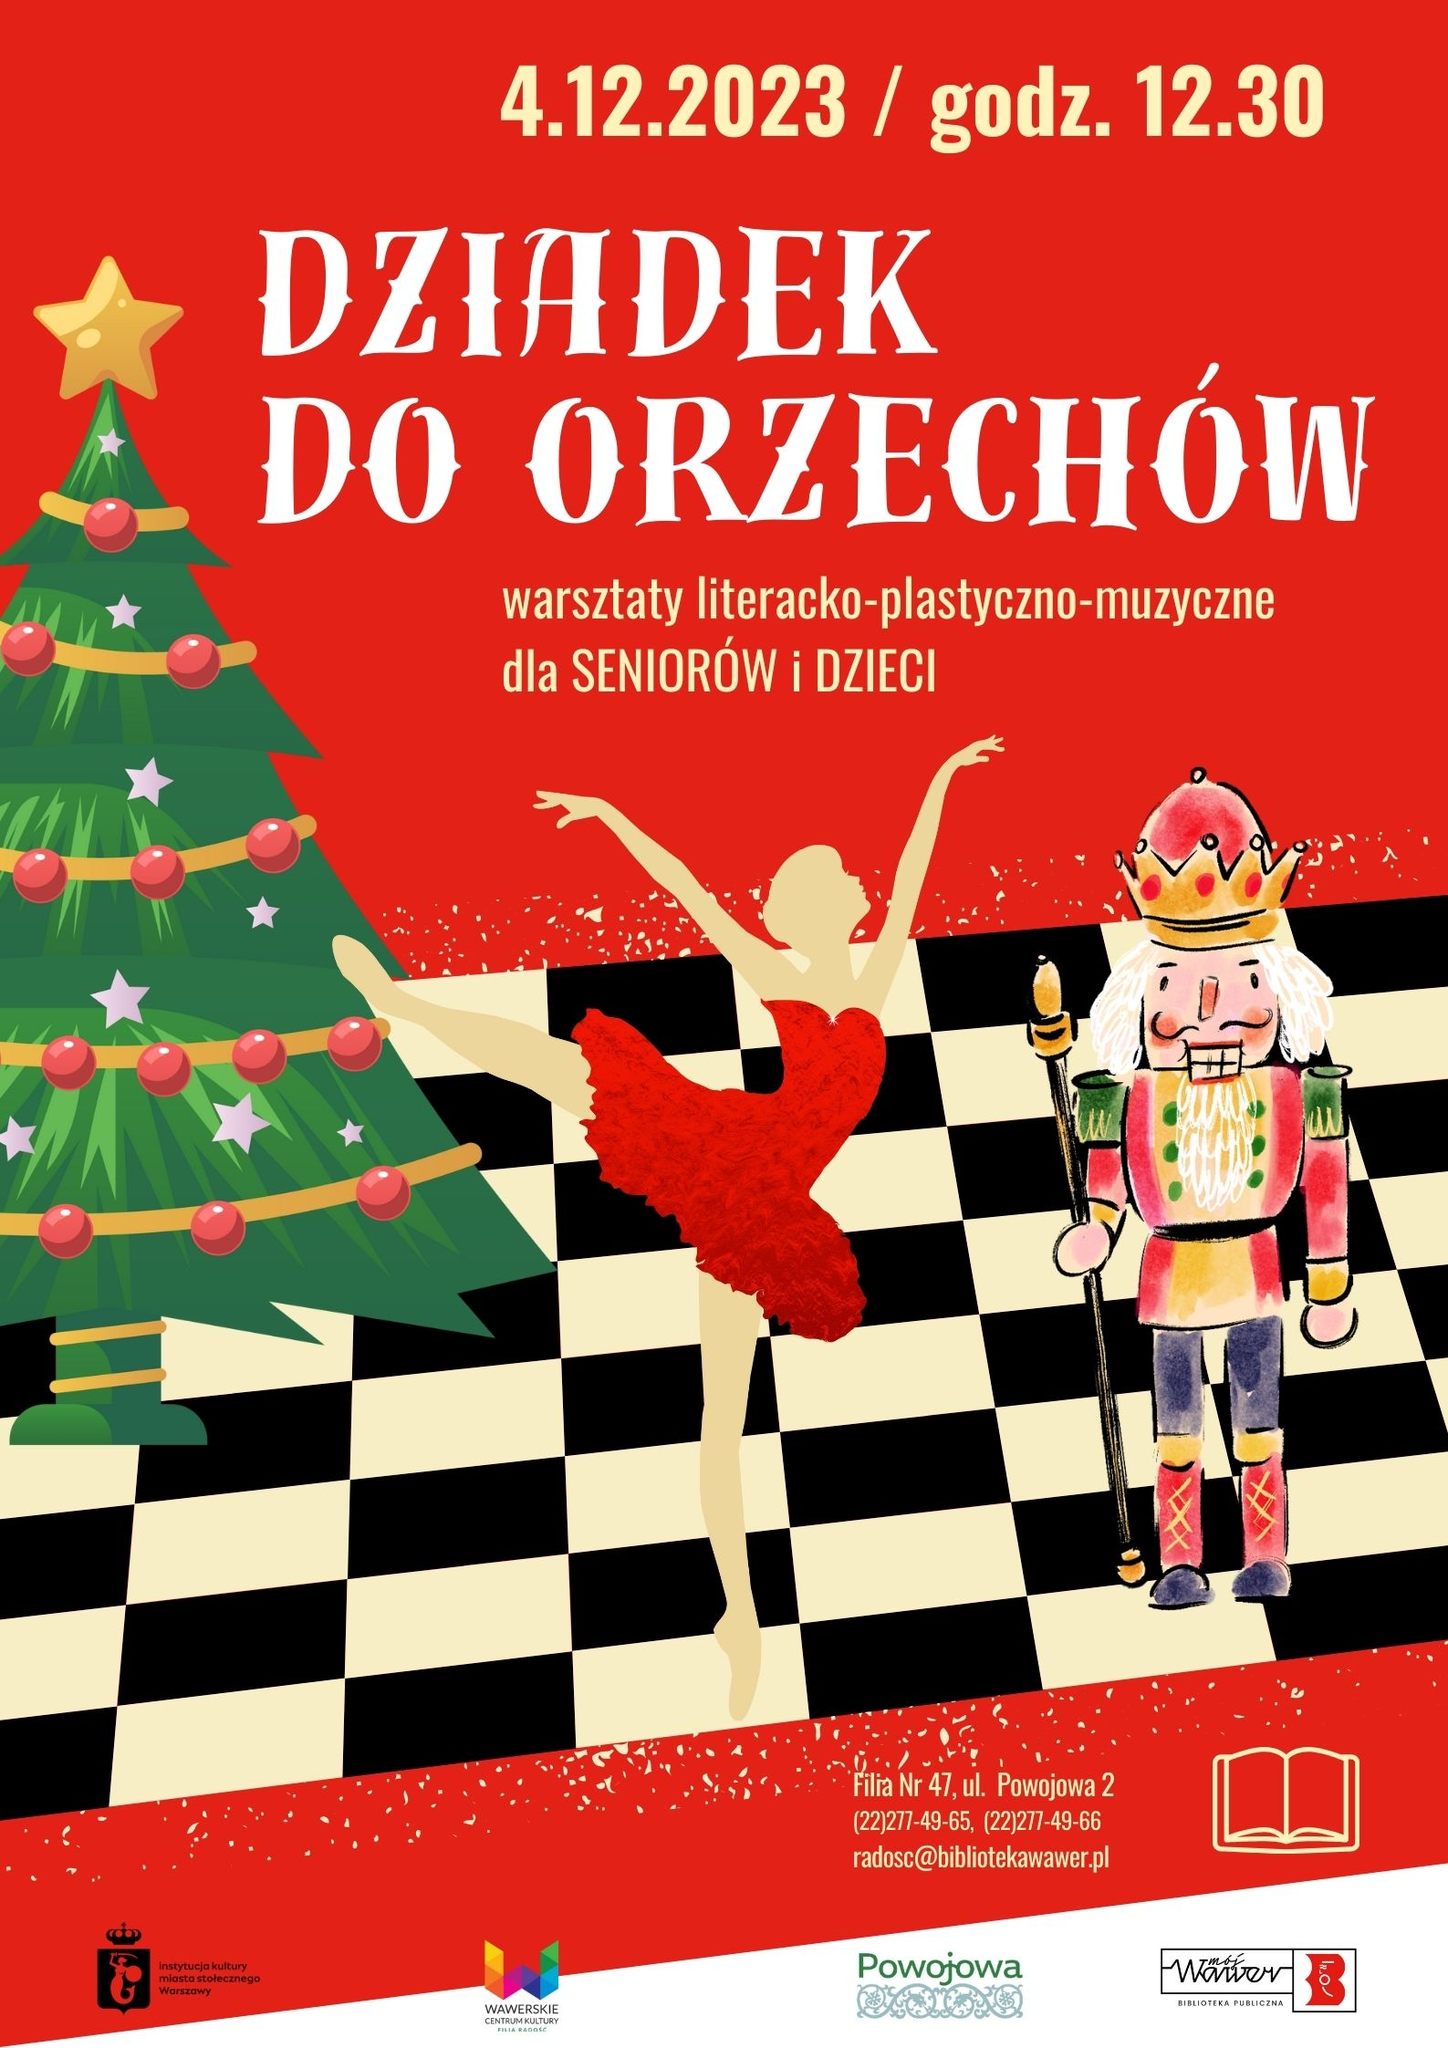 figurka dziadka do orzechów, który stoi na szachownicy, obok niego figurka baletnicy w czerwonej sukience, z lewej strony plakatu choinka bożonarodzeniowa